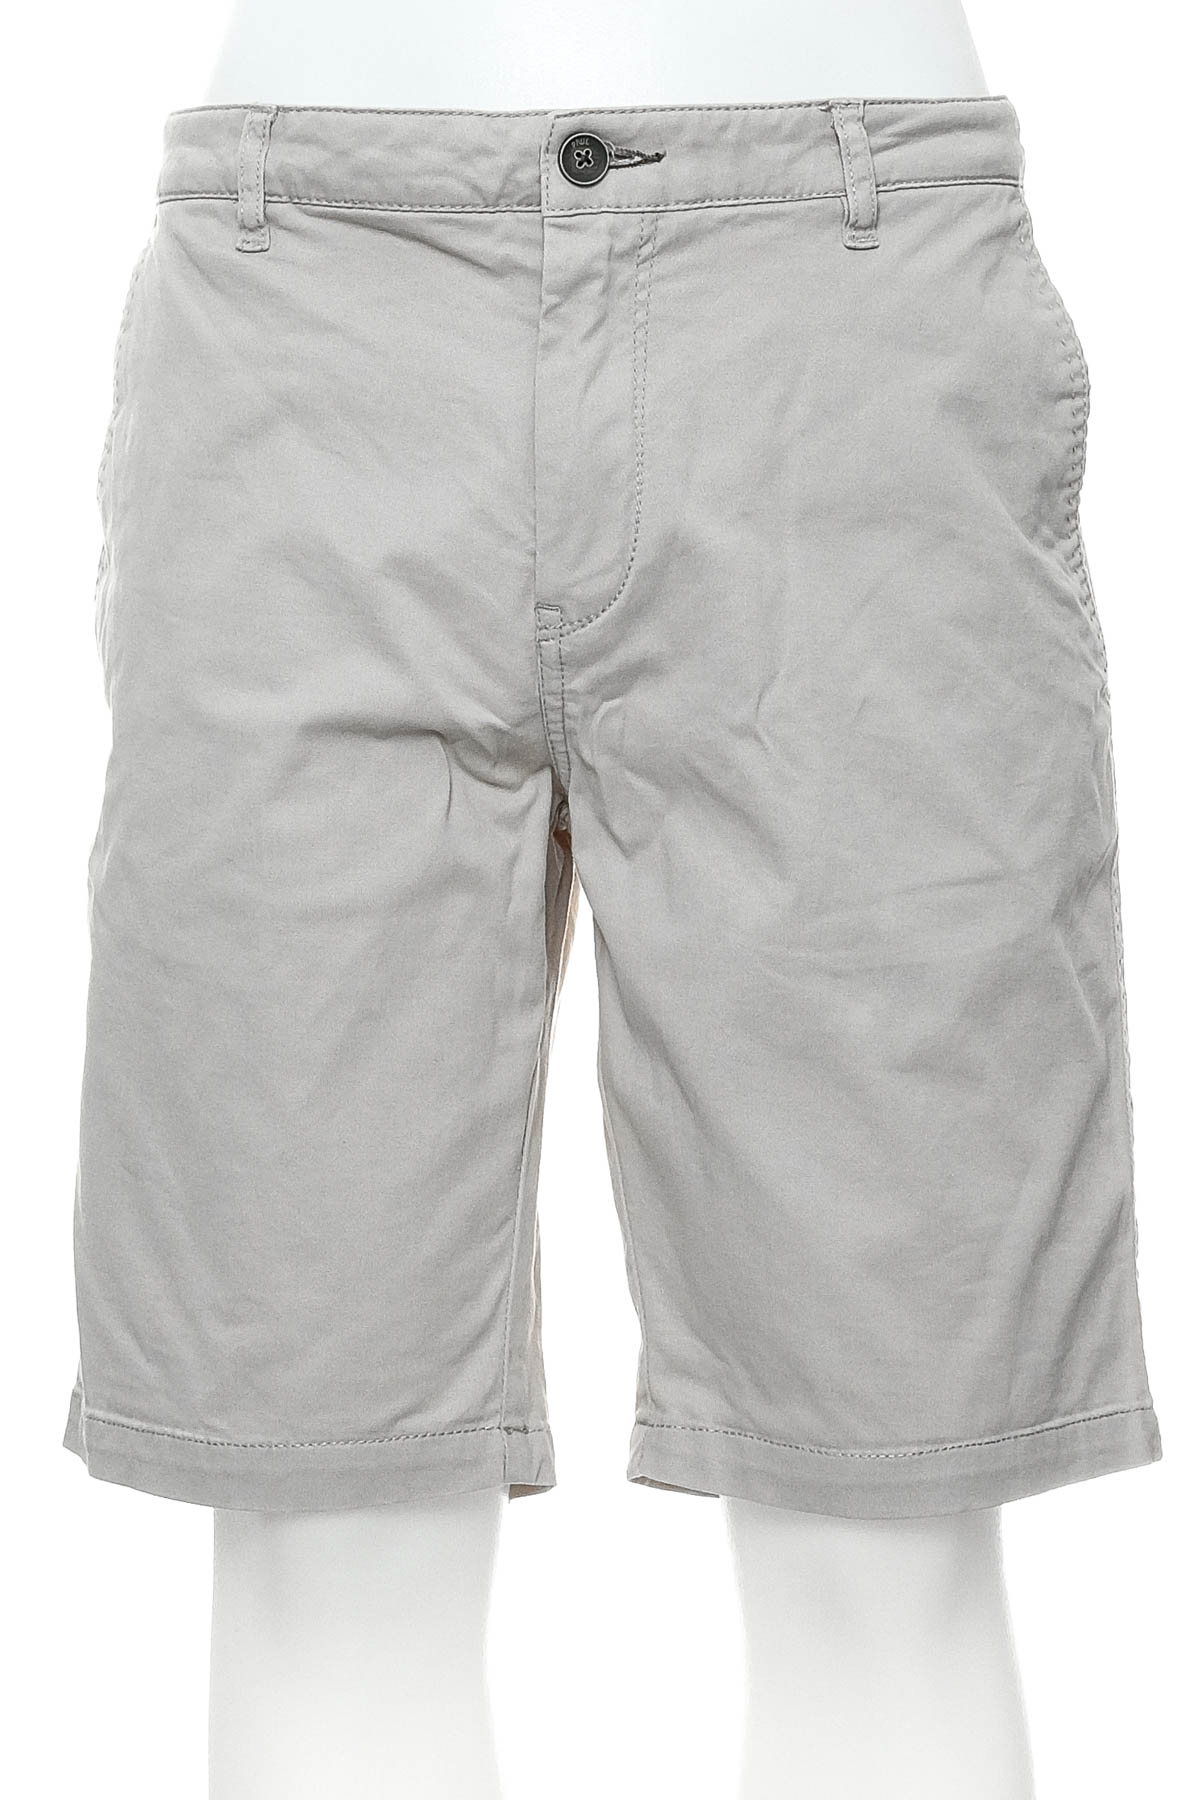 Men's shorts - Paul - 0